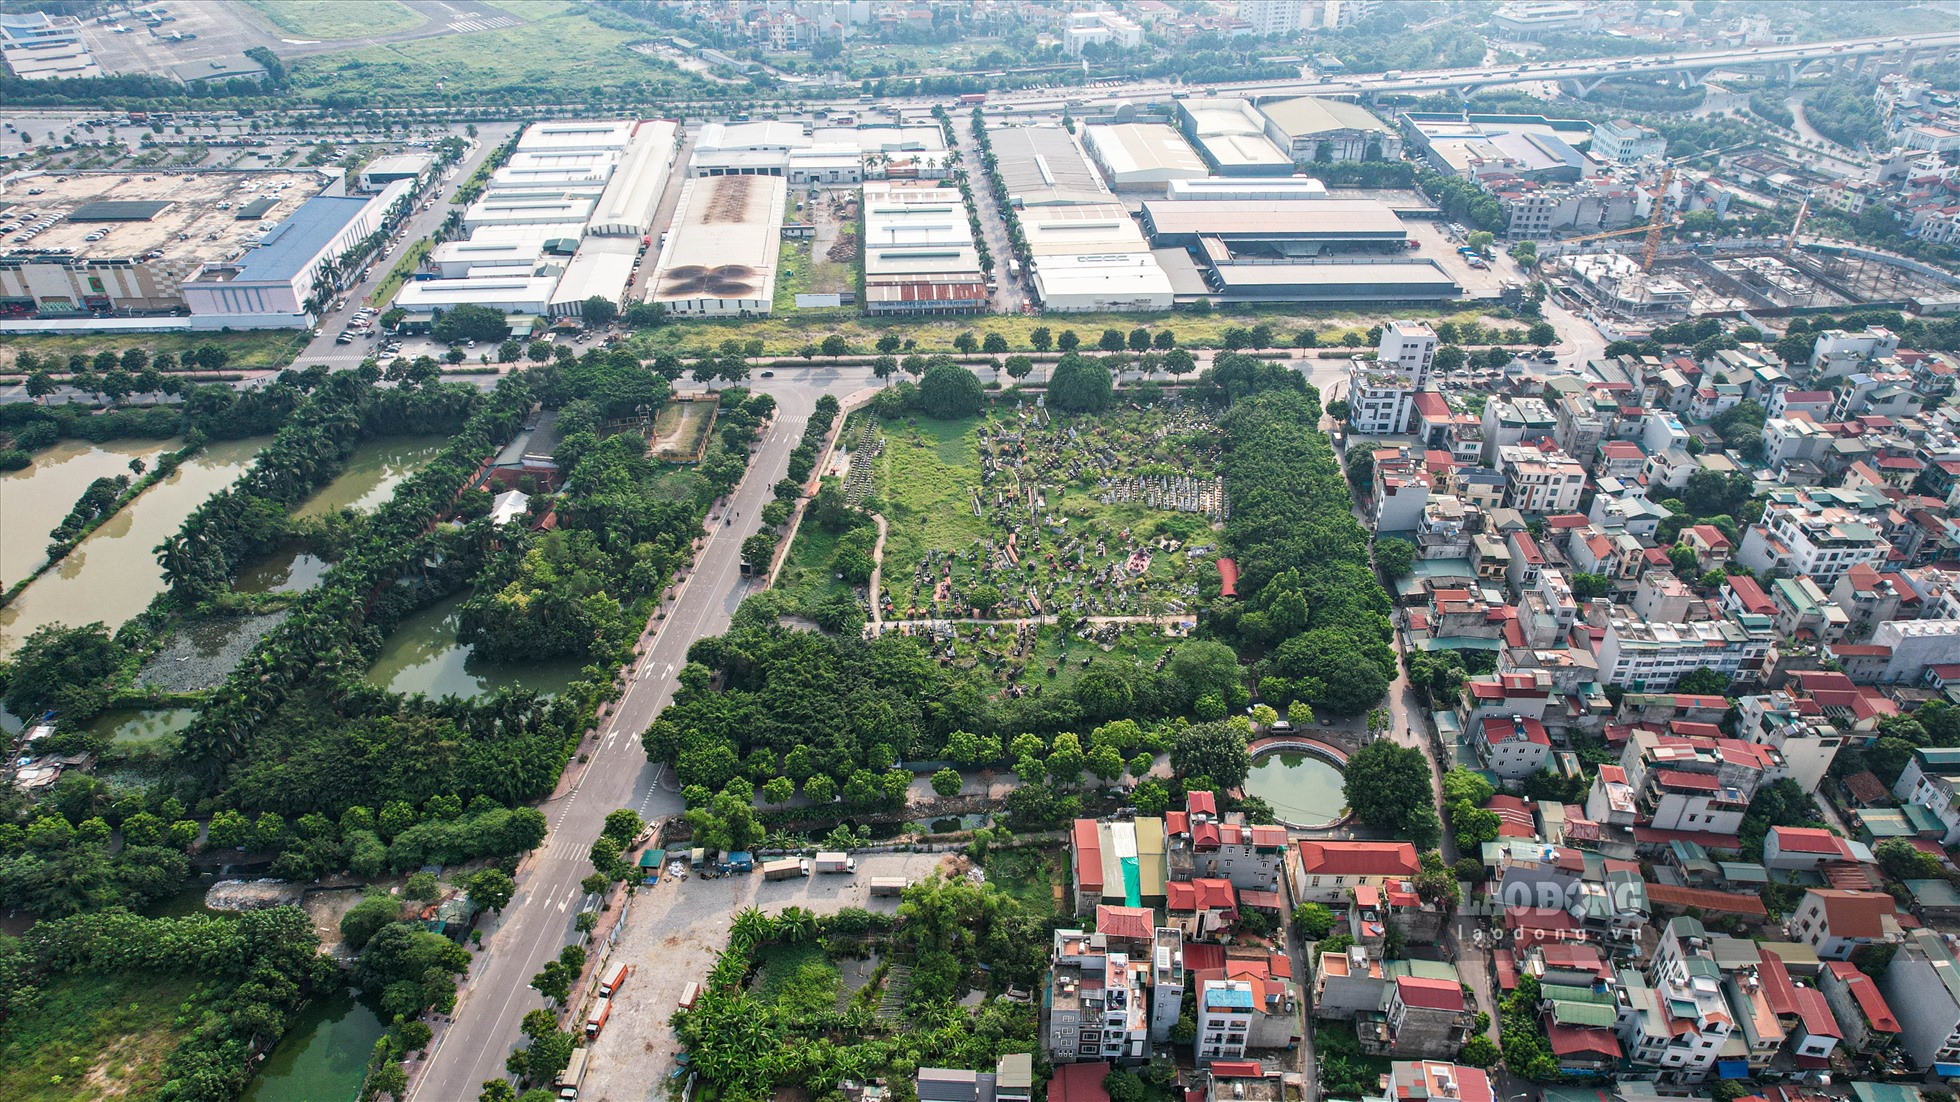 Theo quy hoạch phân khu N10, toàn bộ khu đất hiện là nghĩa trang Trường Lâm được quy hoạch xây trường học.